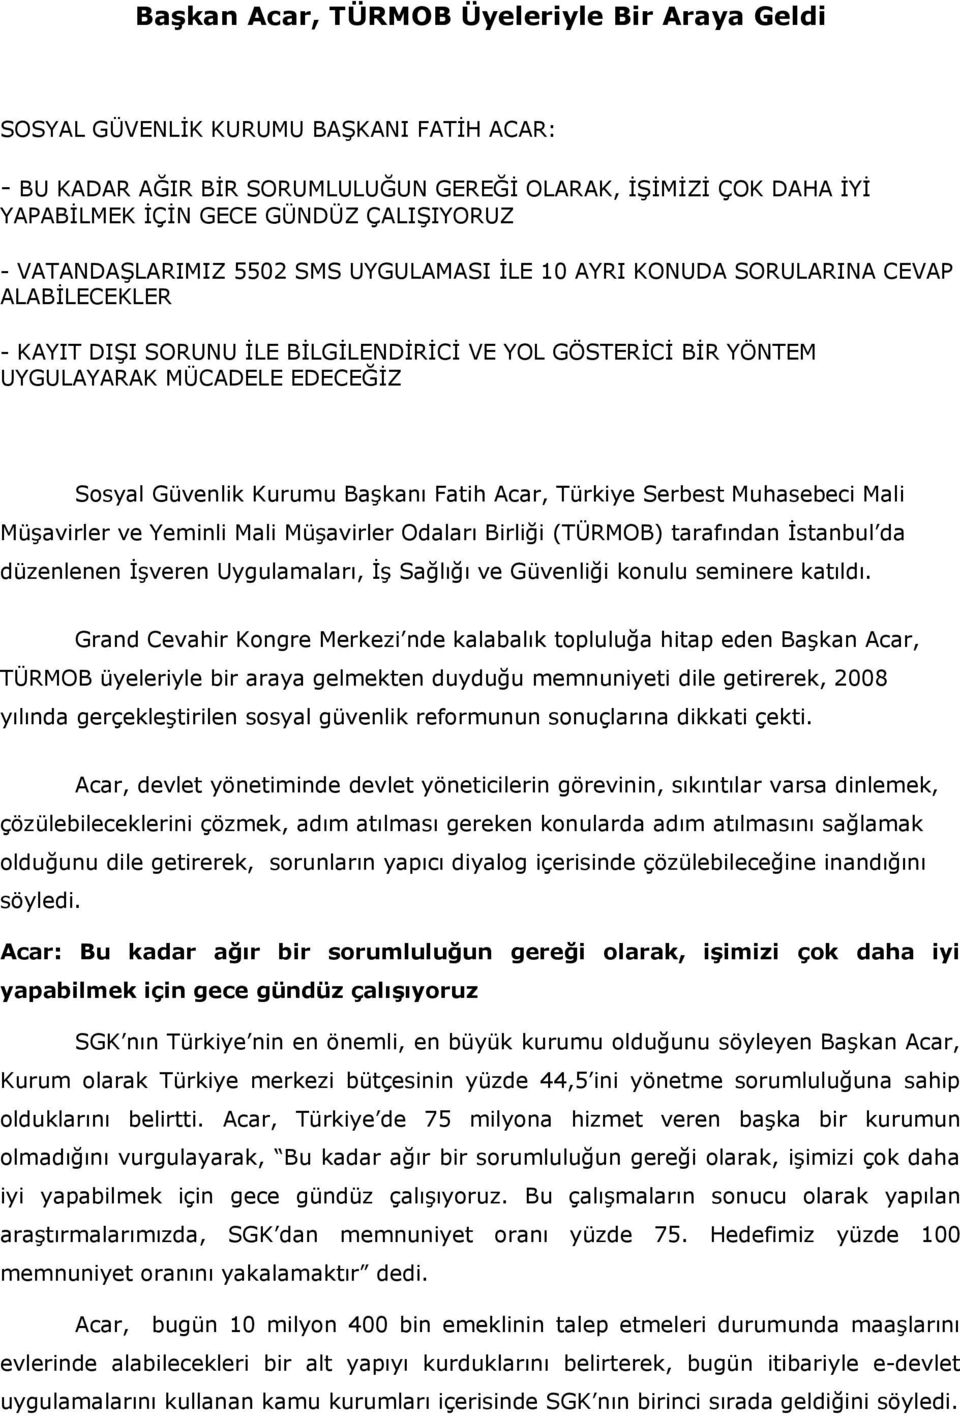 Güvenlik Kurumu Başkanı Fatih Acar, Türkiye Serbest Muhasebeci Mali Müşavirler ve Yeminli Mali Müşavirler Odaları Birliği (TÜRMOB) tarafından İstanbul da düzenlenen İşveren Uygulamaları, İş Sağlığı